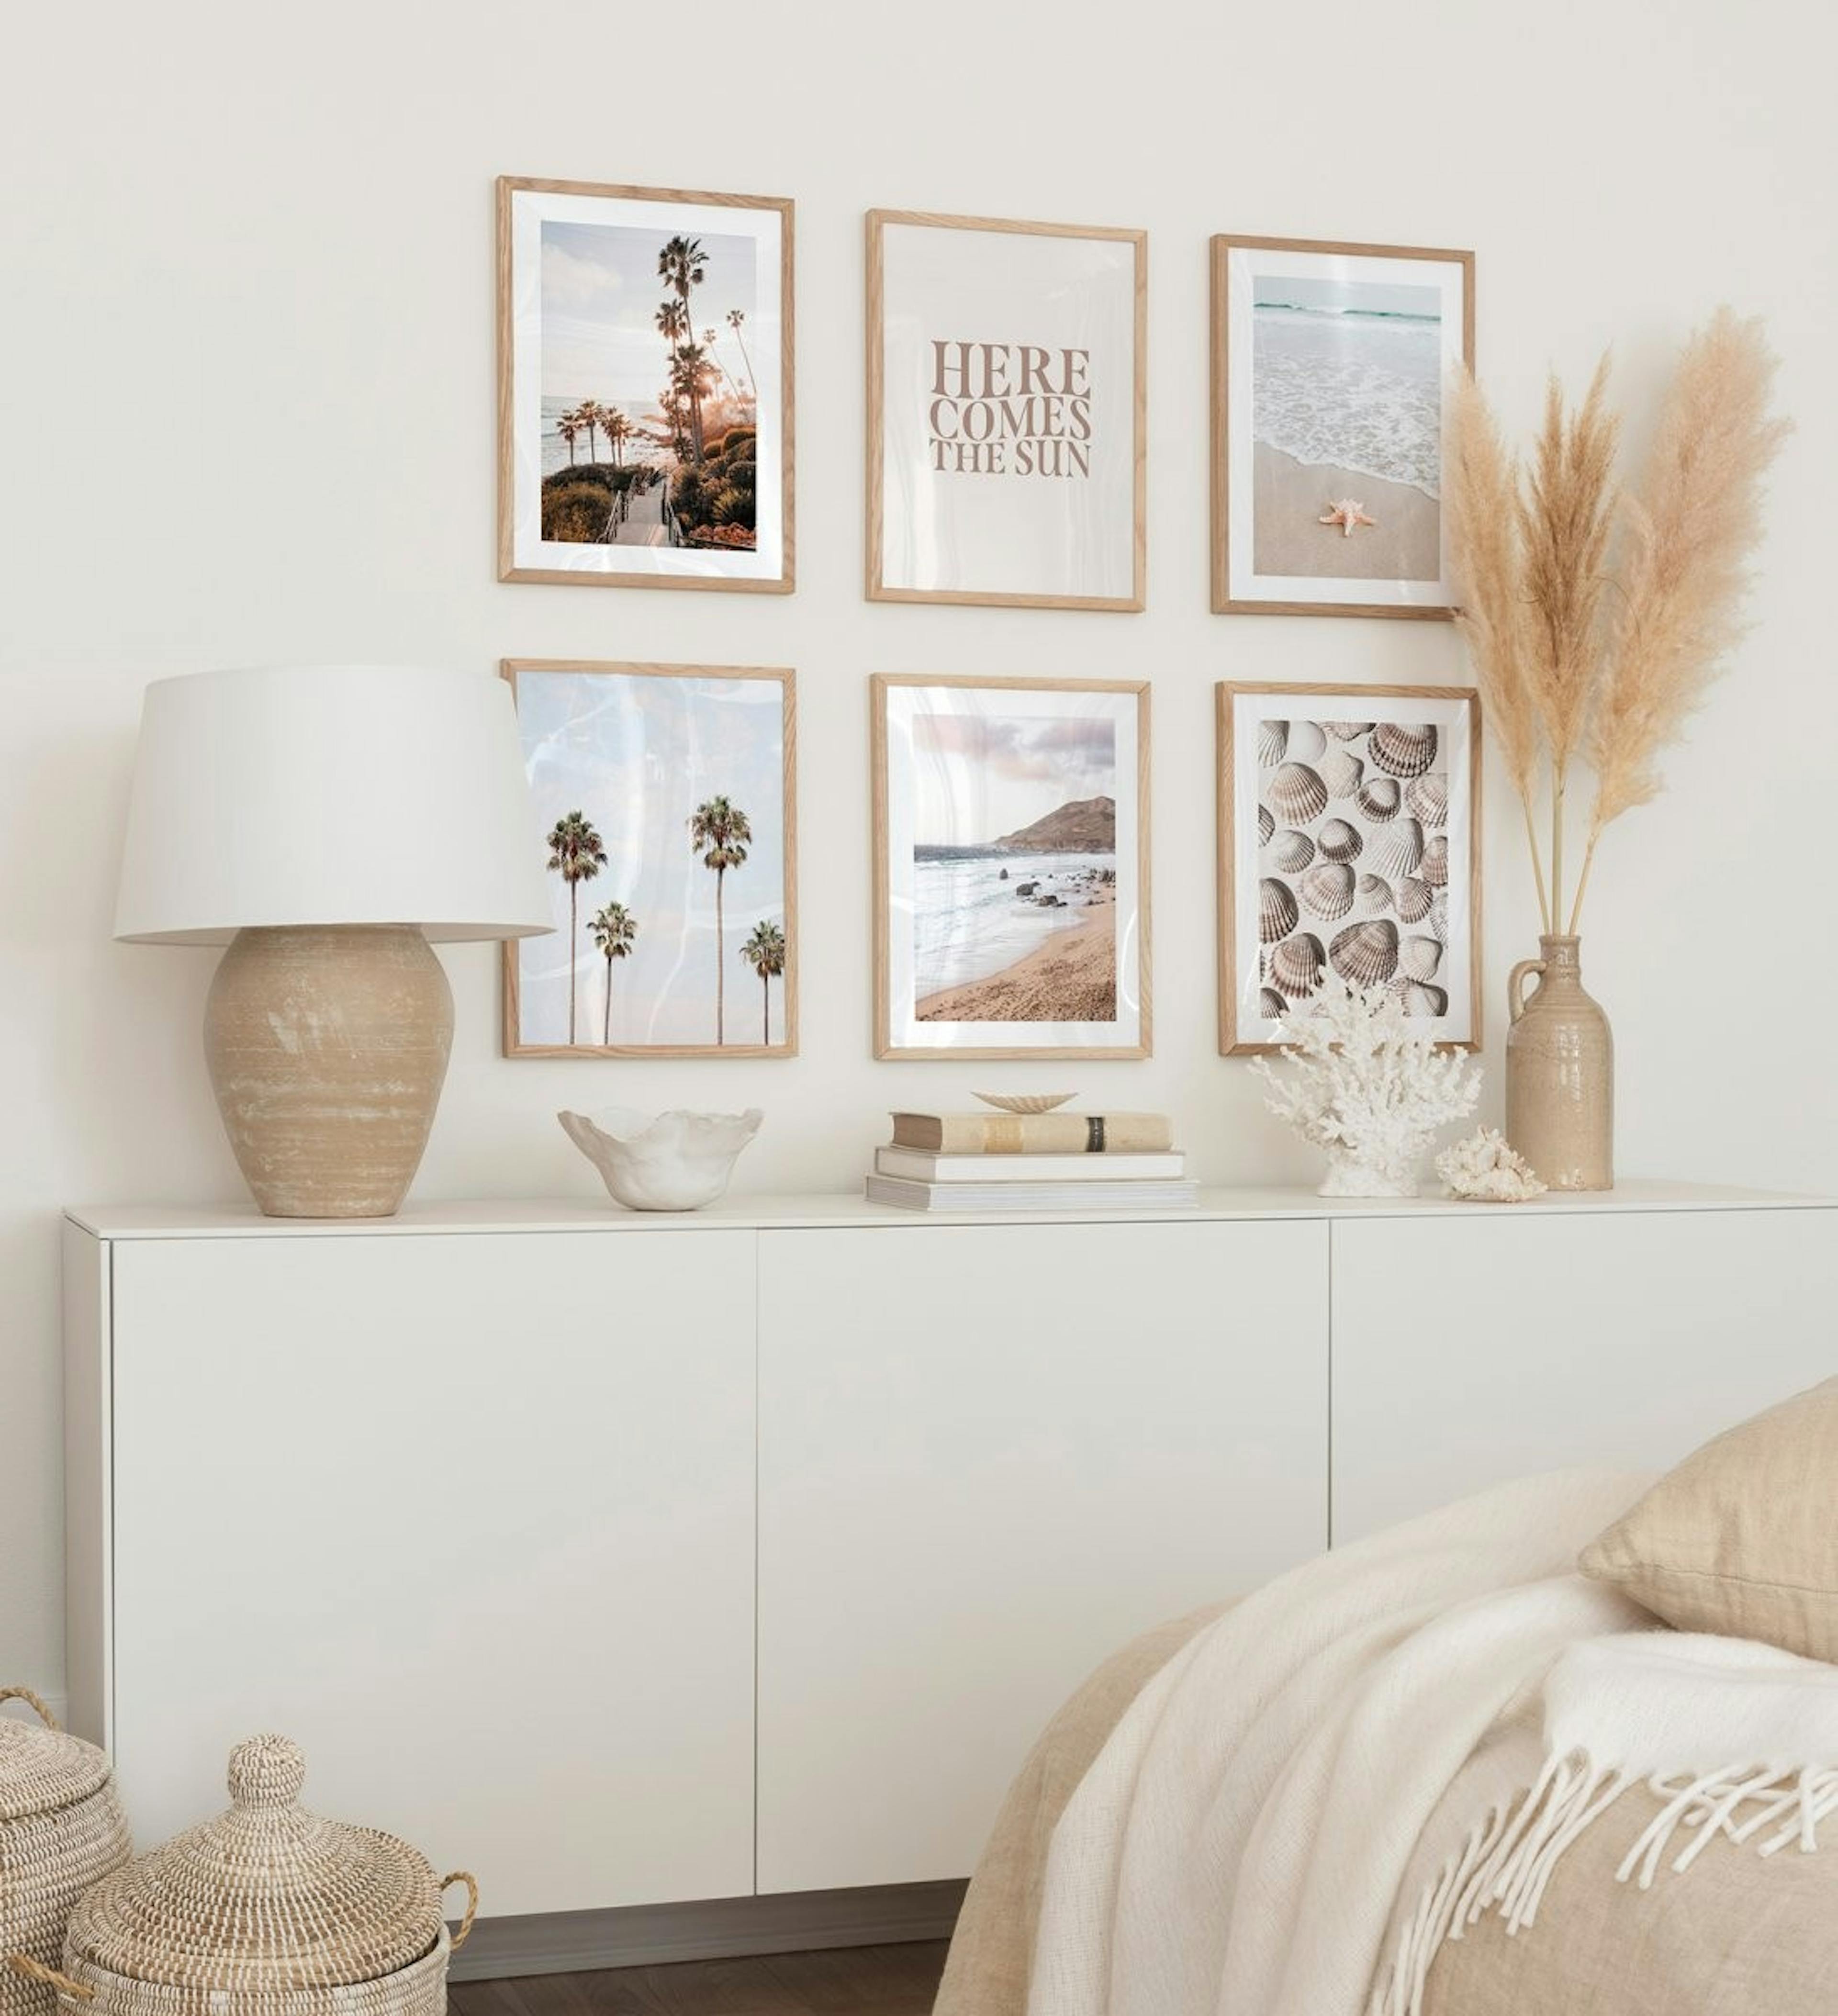 Galerie foto pentru dormitor cu postere tropicale pe tema plajei în rame din lemn de stejar.